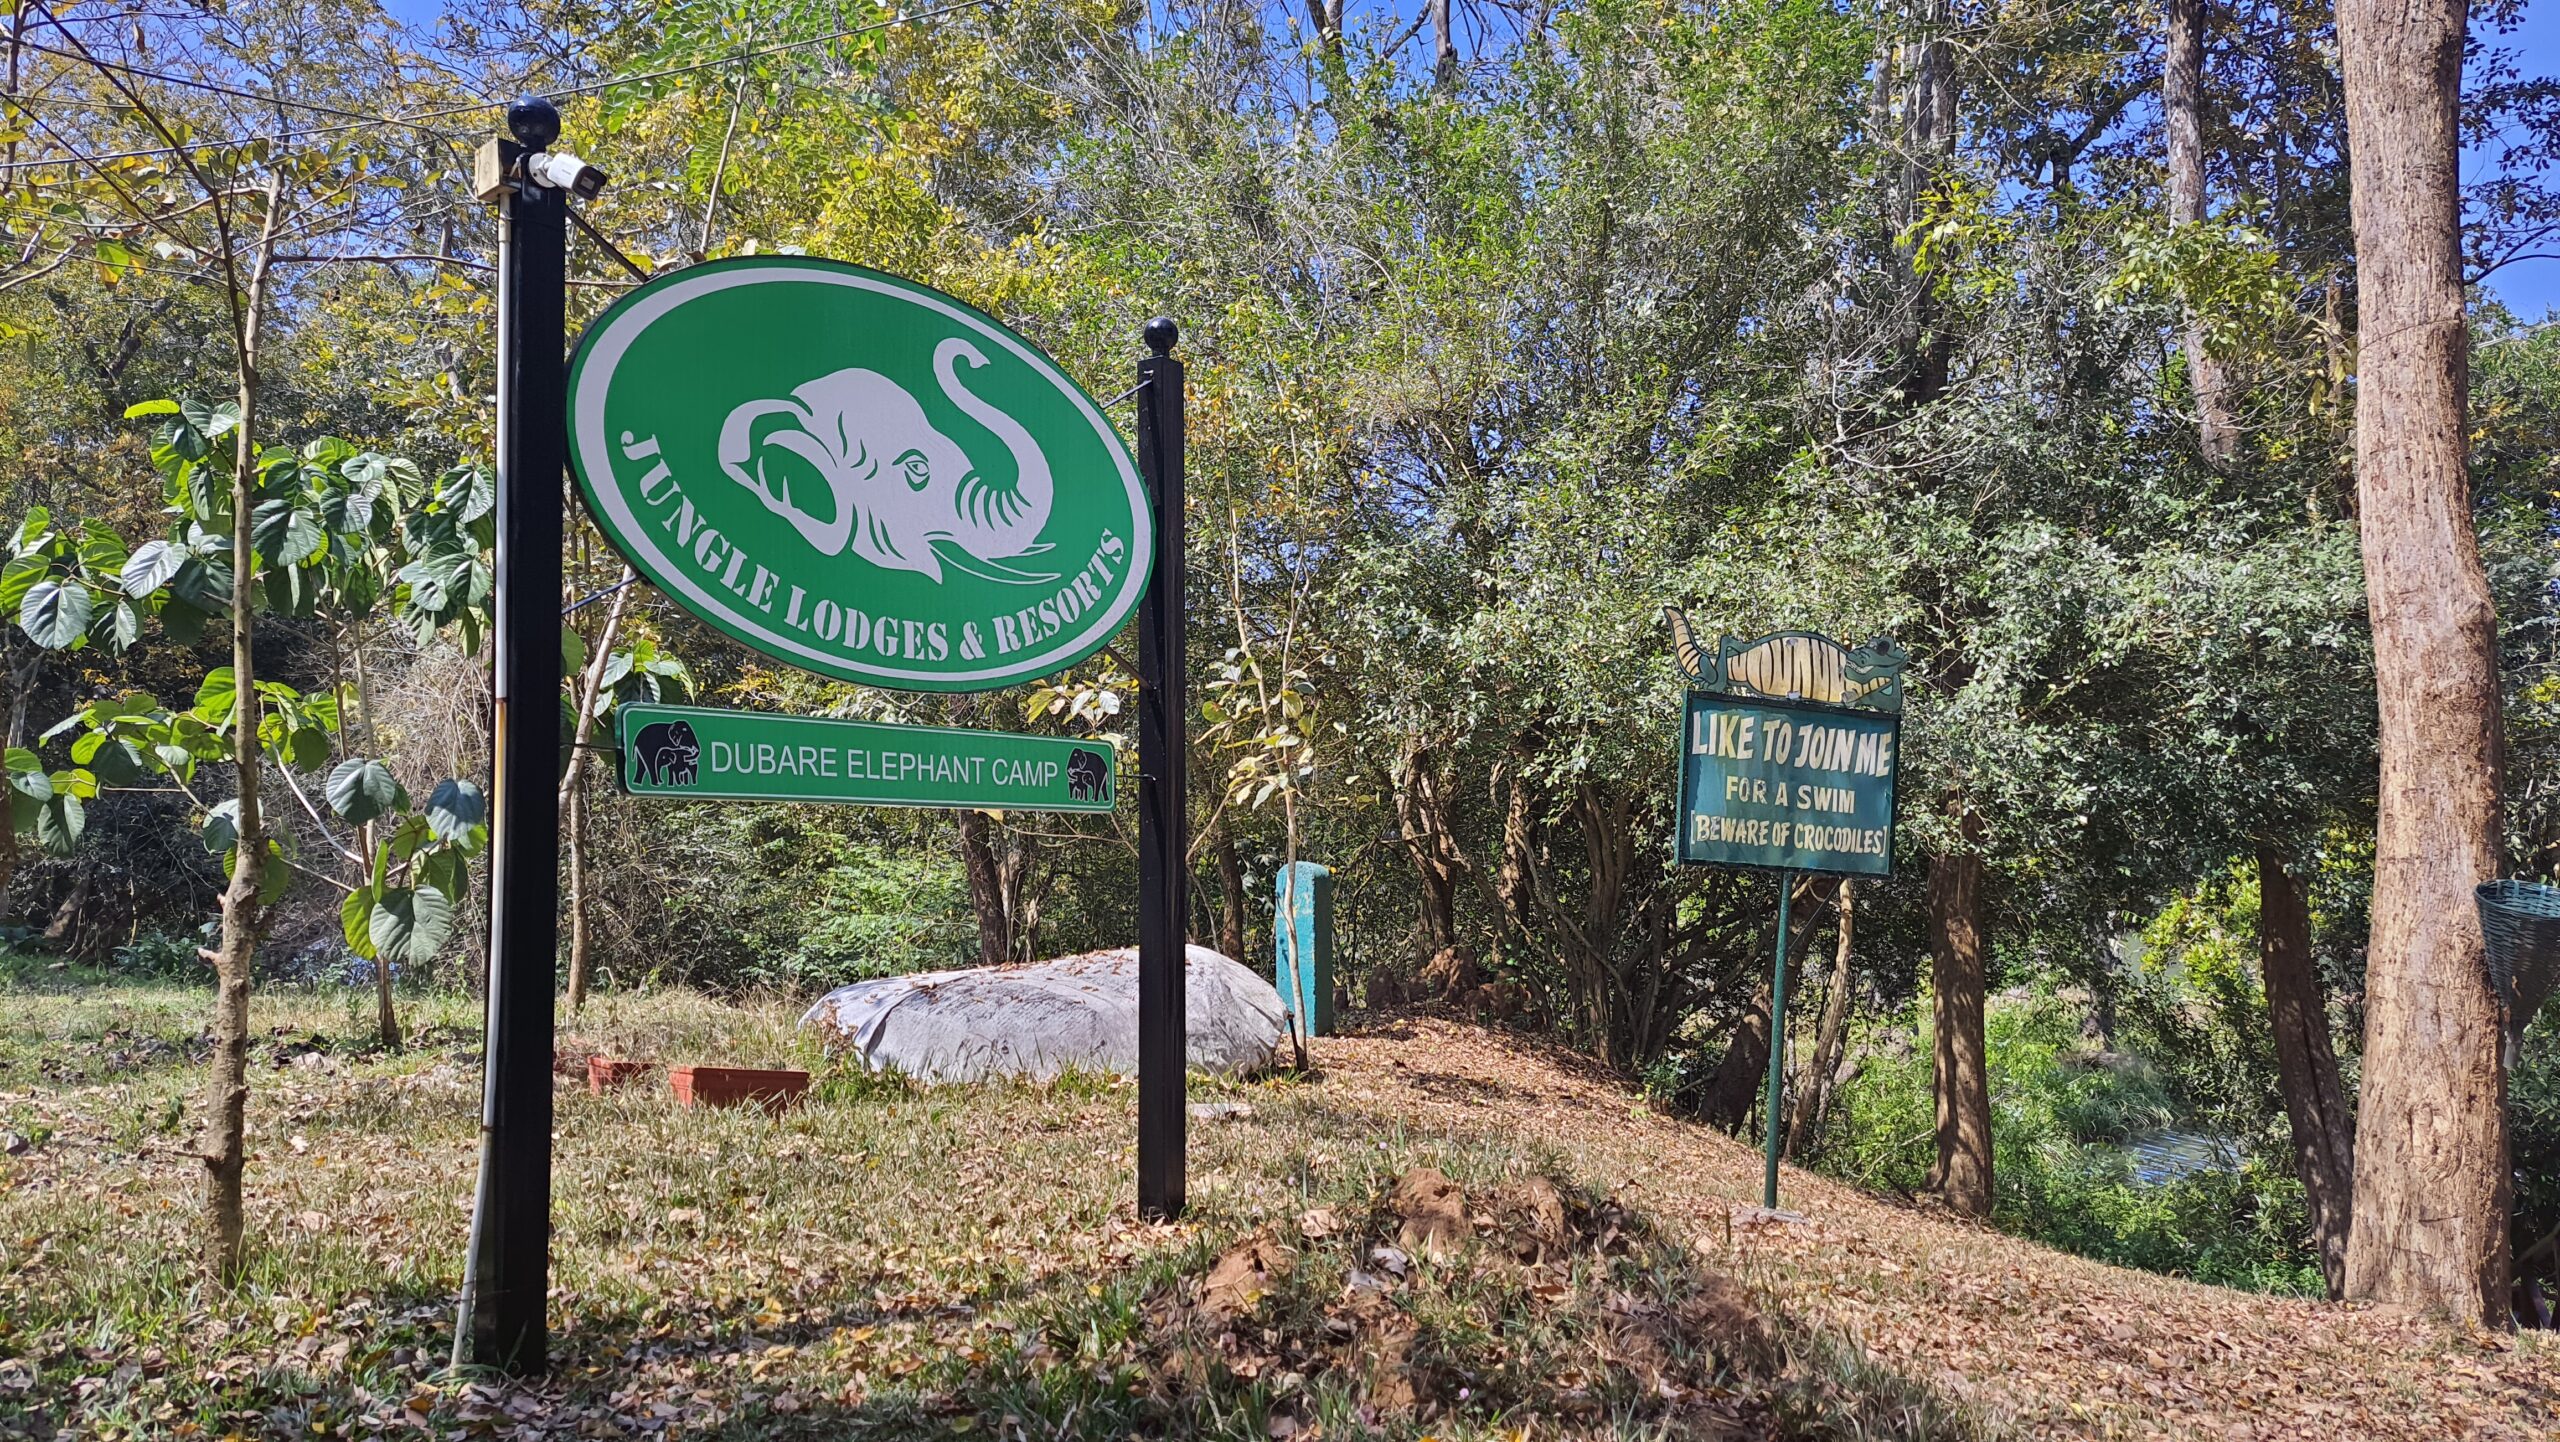 Dubare Elephant Camp and Jungle Lodges